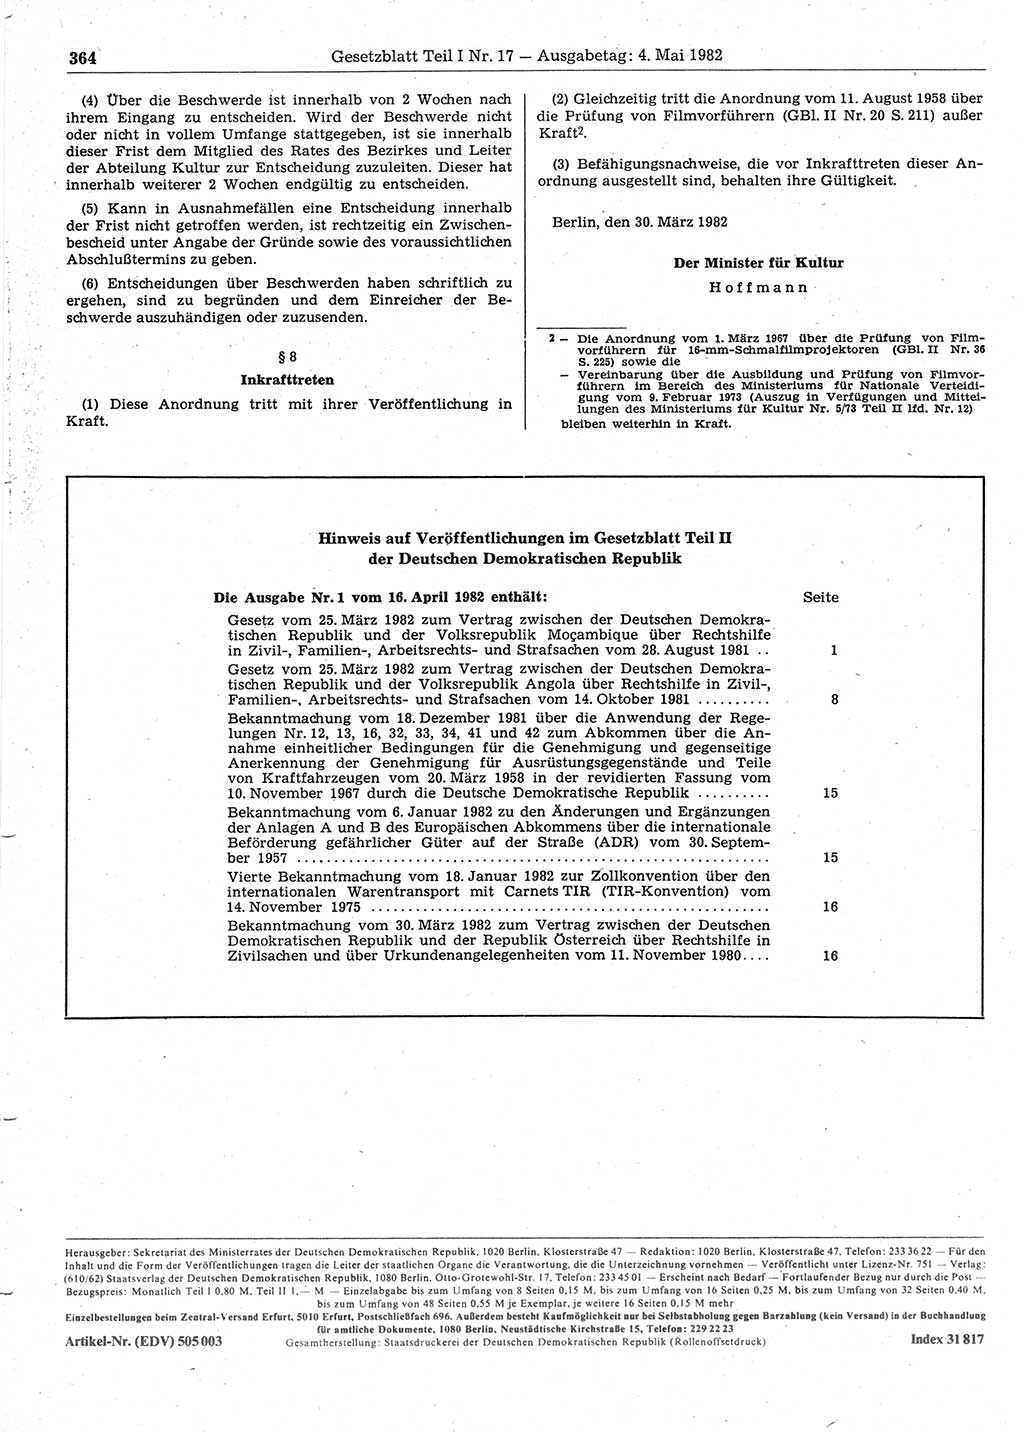 Gesetzblatt (GBl.) der Deutschen Demokratischen Republik (DDR) Teil Ⅰ 1982, Seite 364 (GBl. DDR Ⅰ 1982, S. 364)